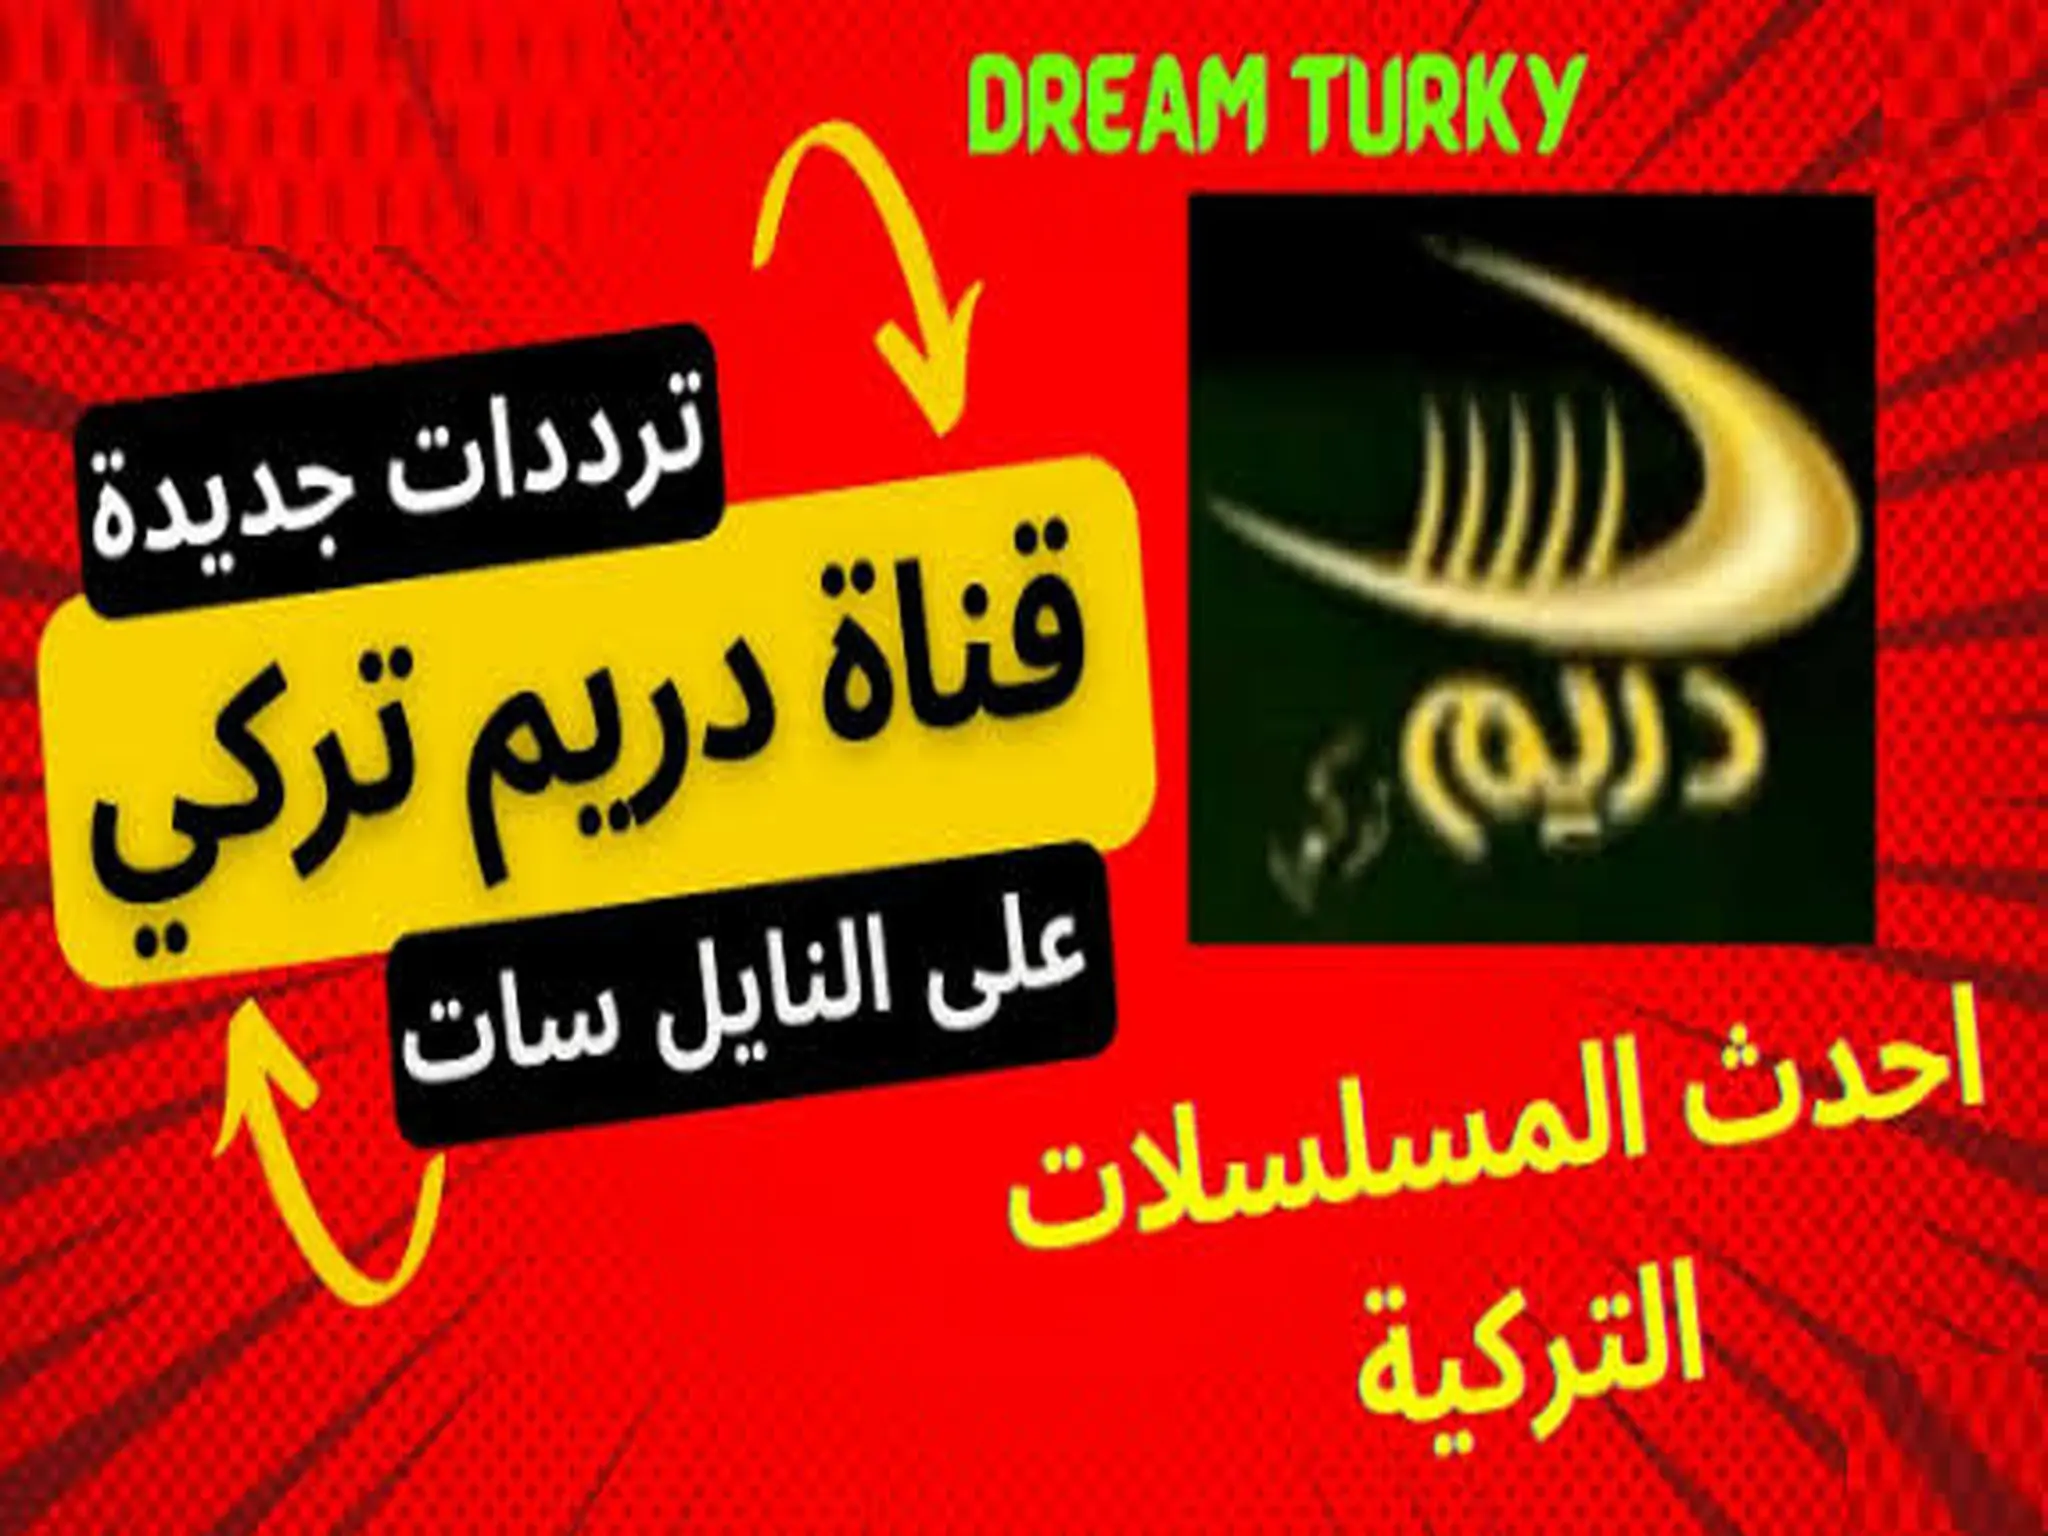 تردد قناة دريم تركي Dream Turkey الجديد 2023 على النايل سات